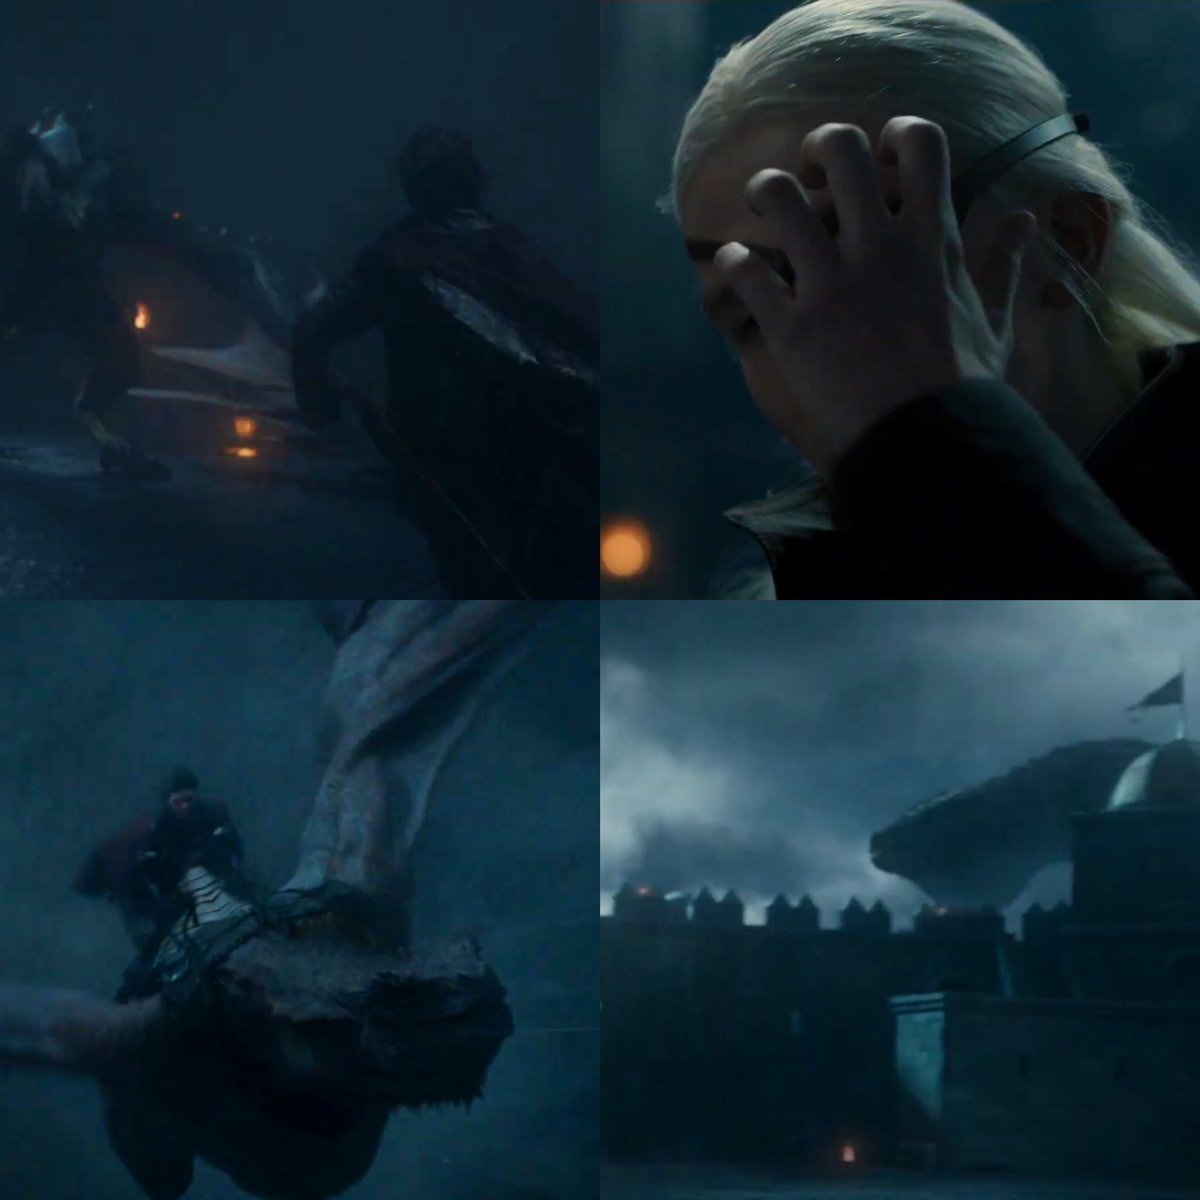 A 1° batalha da Dança dos Dragões será exibida no próximo episódio: Aemond Targaryen vs Lucerys Velaryon.